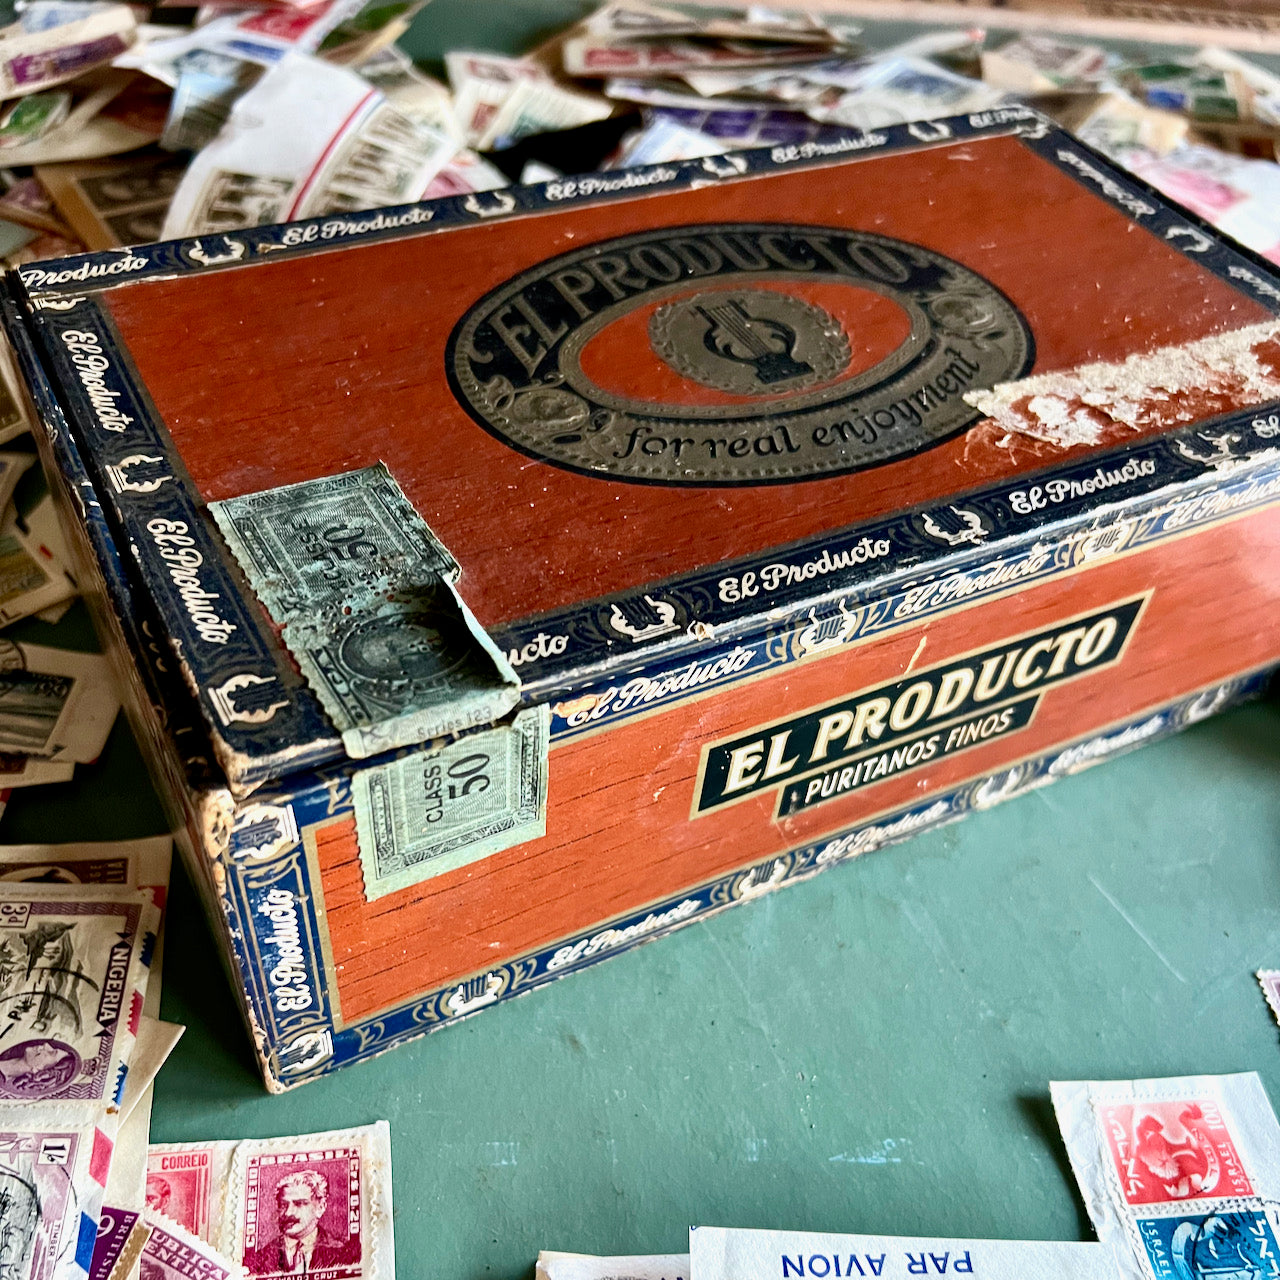 Hundreds of Old Stamps in Vintage Cigar Box